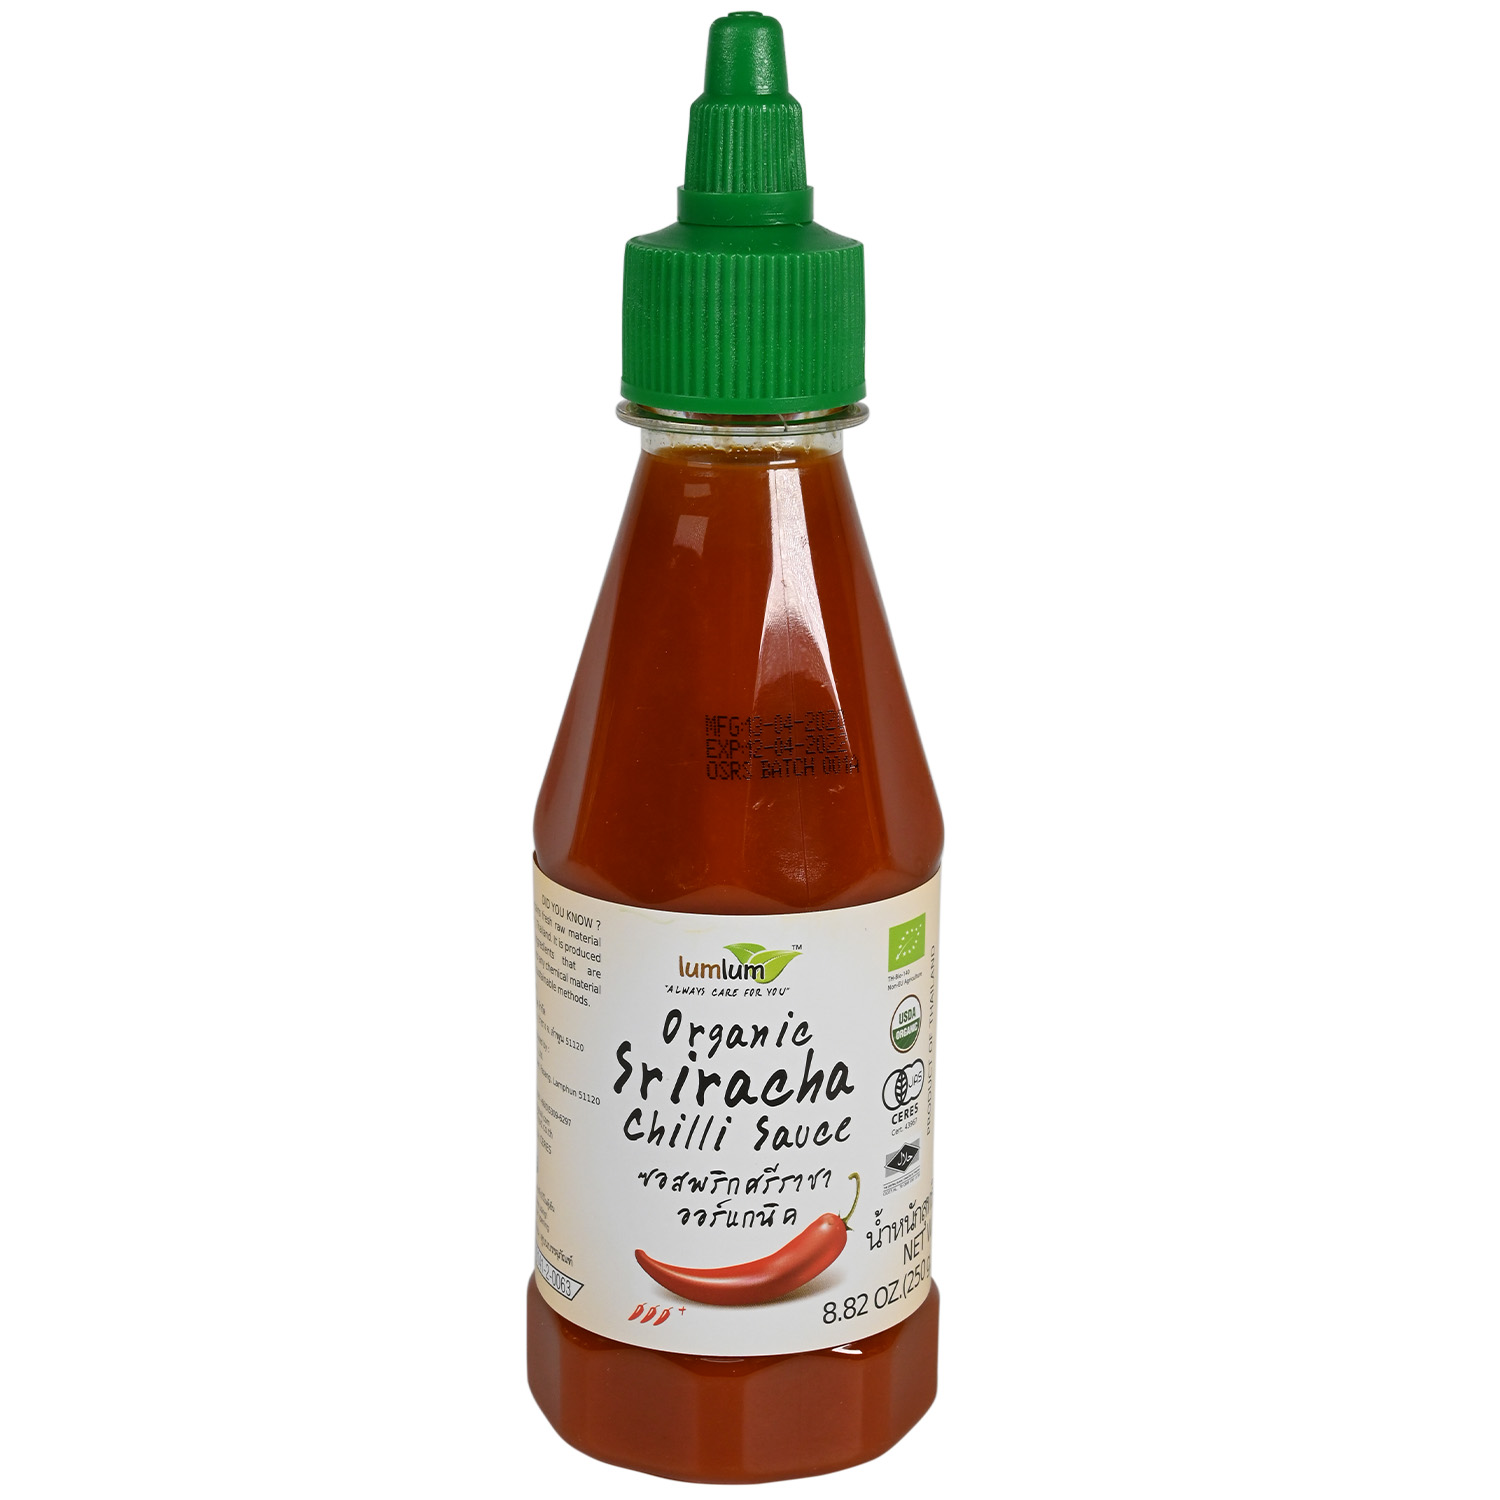 Lumlum Organic Sriracha Chili Sauce